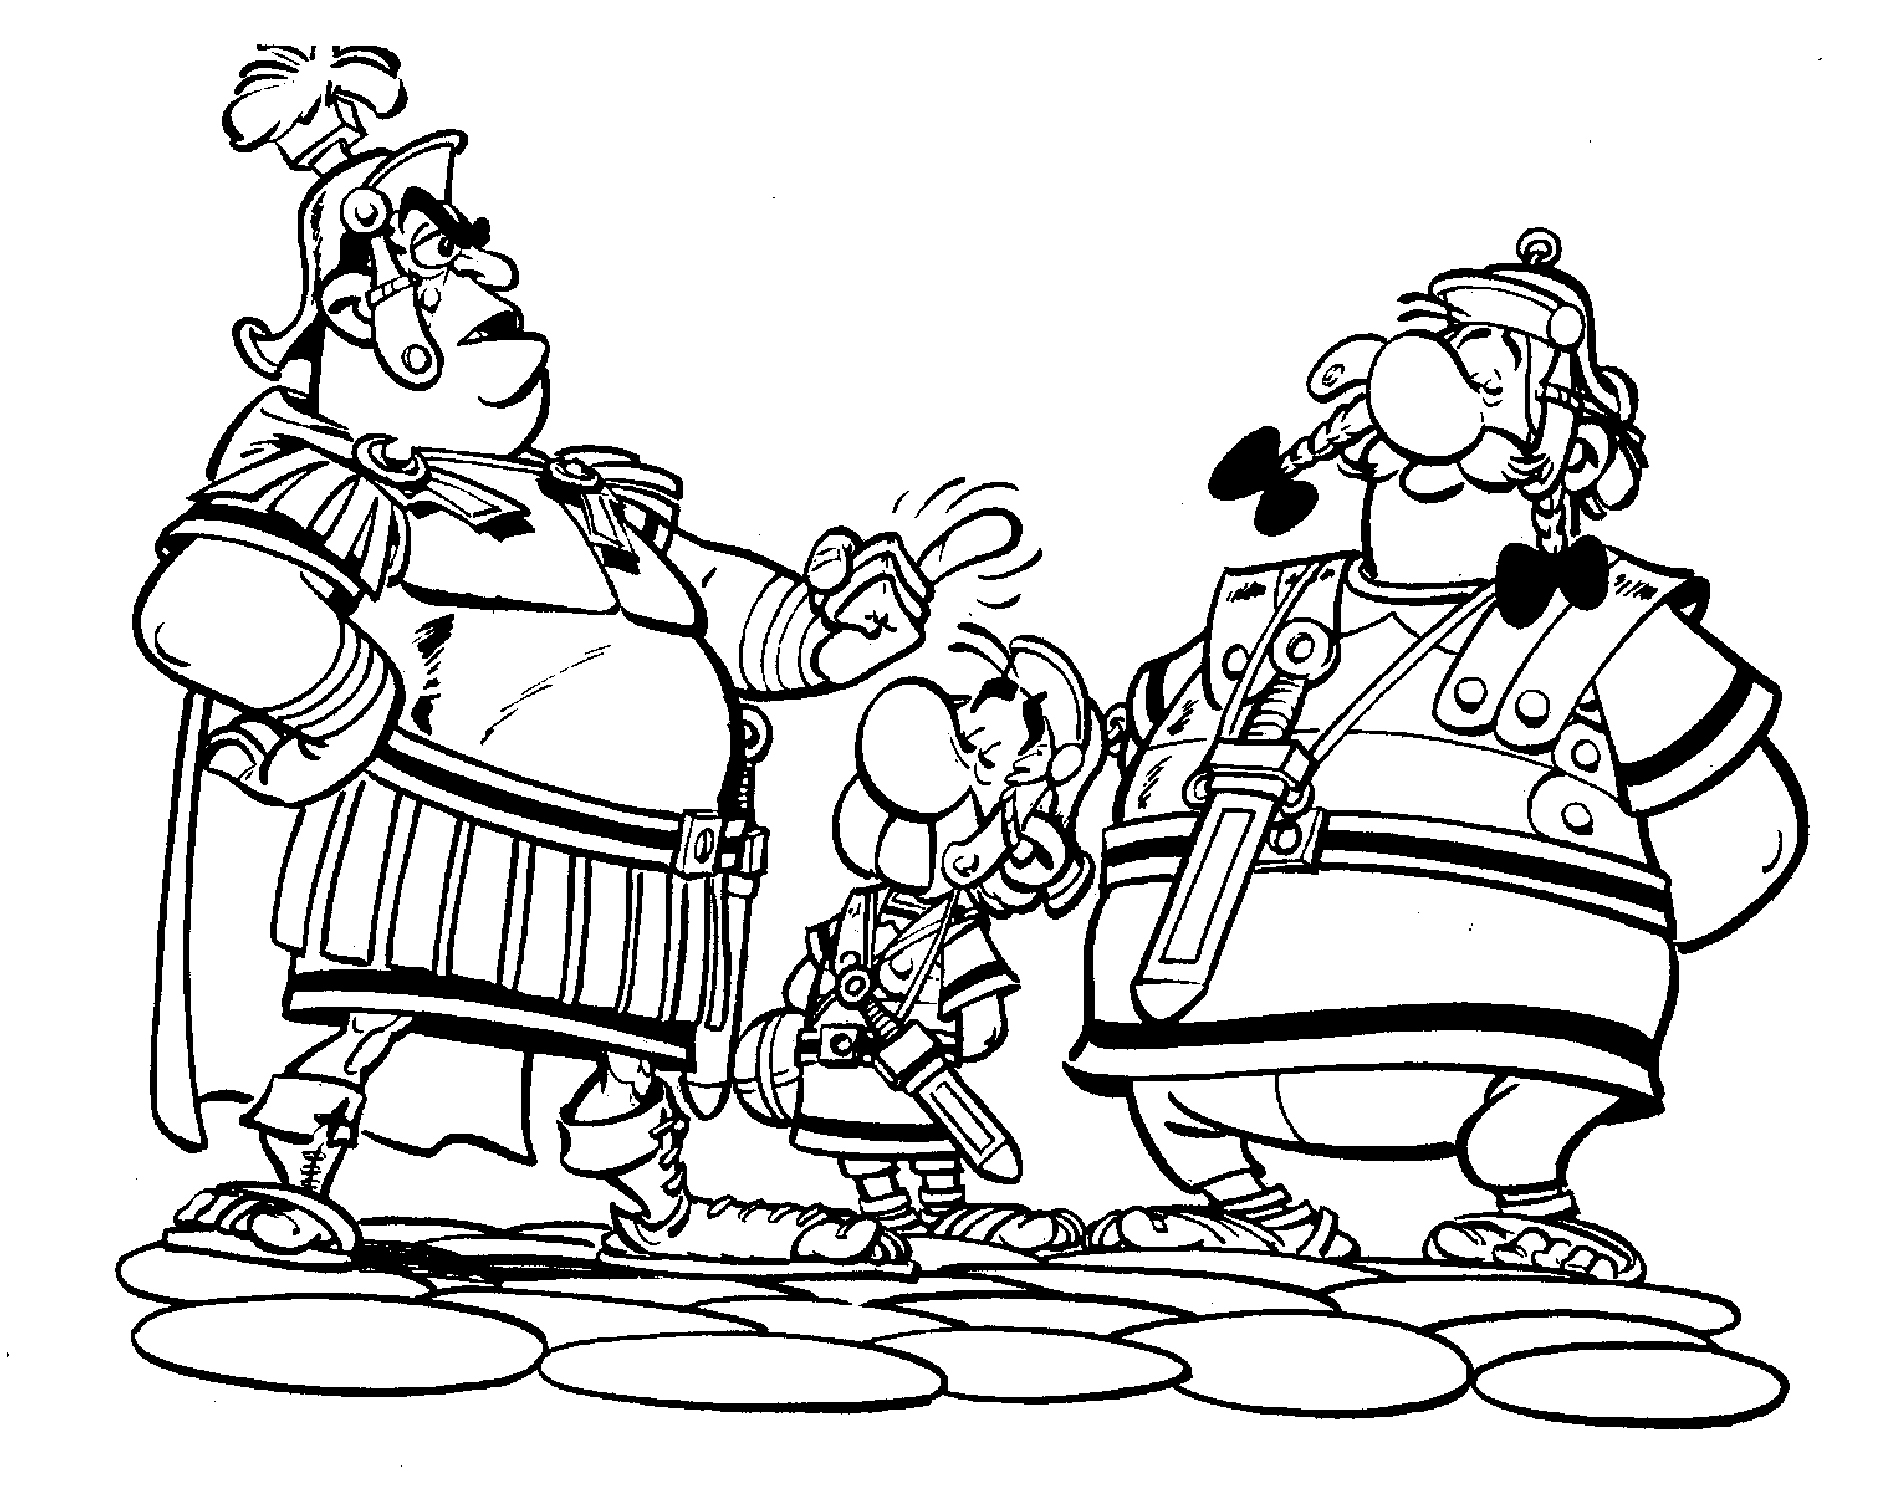 Asterix und obelix ausmalbilder